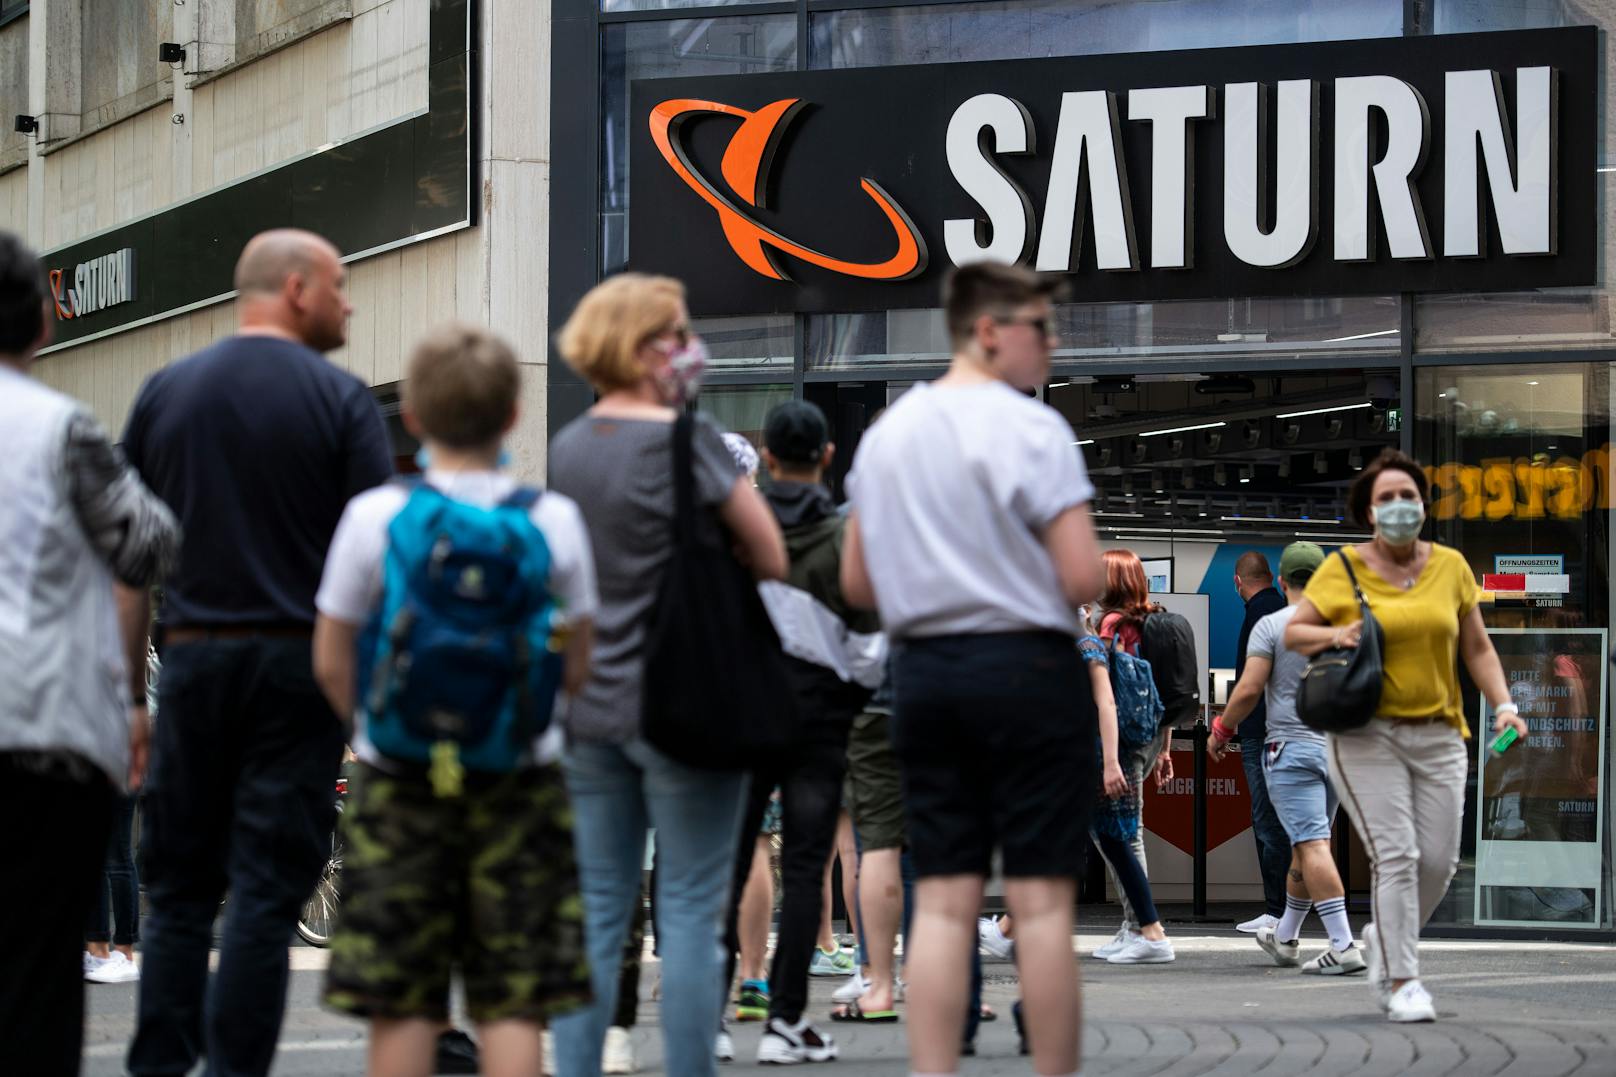 Media Markt und Saturn streichen 3.500 Jobs